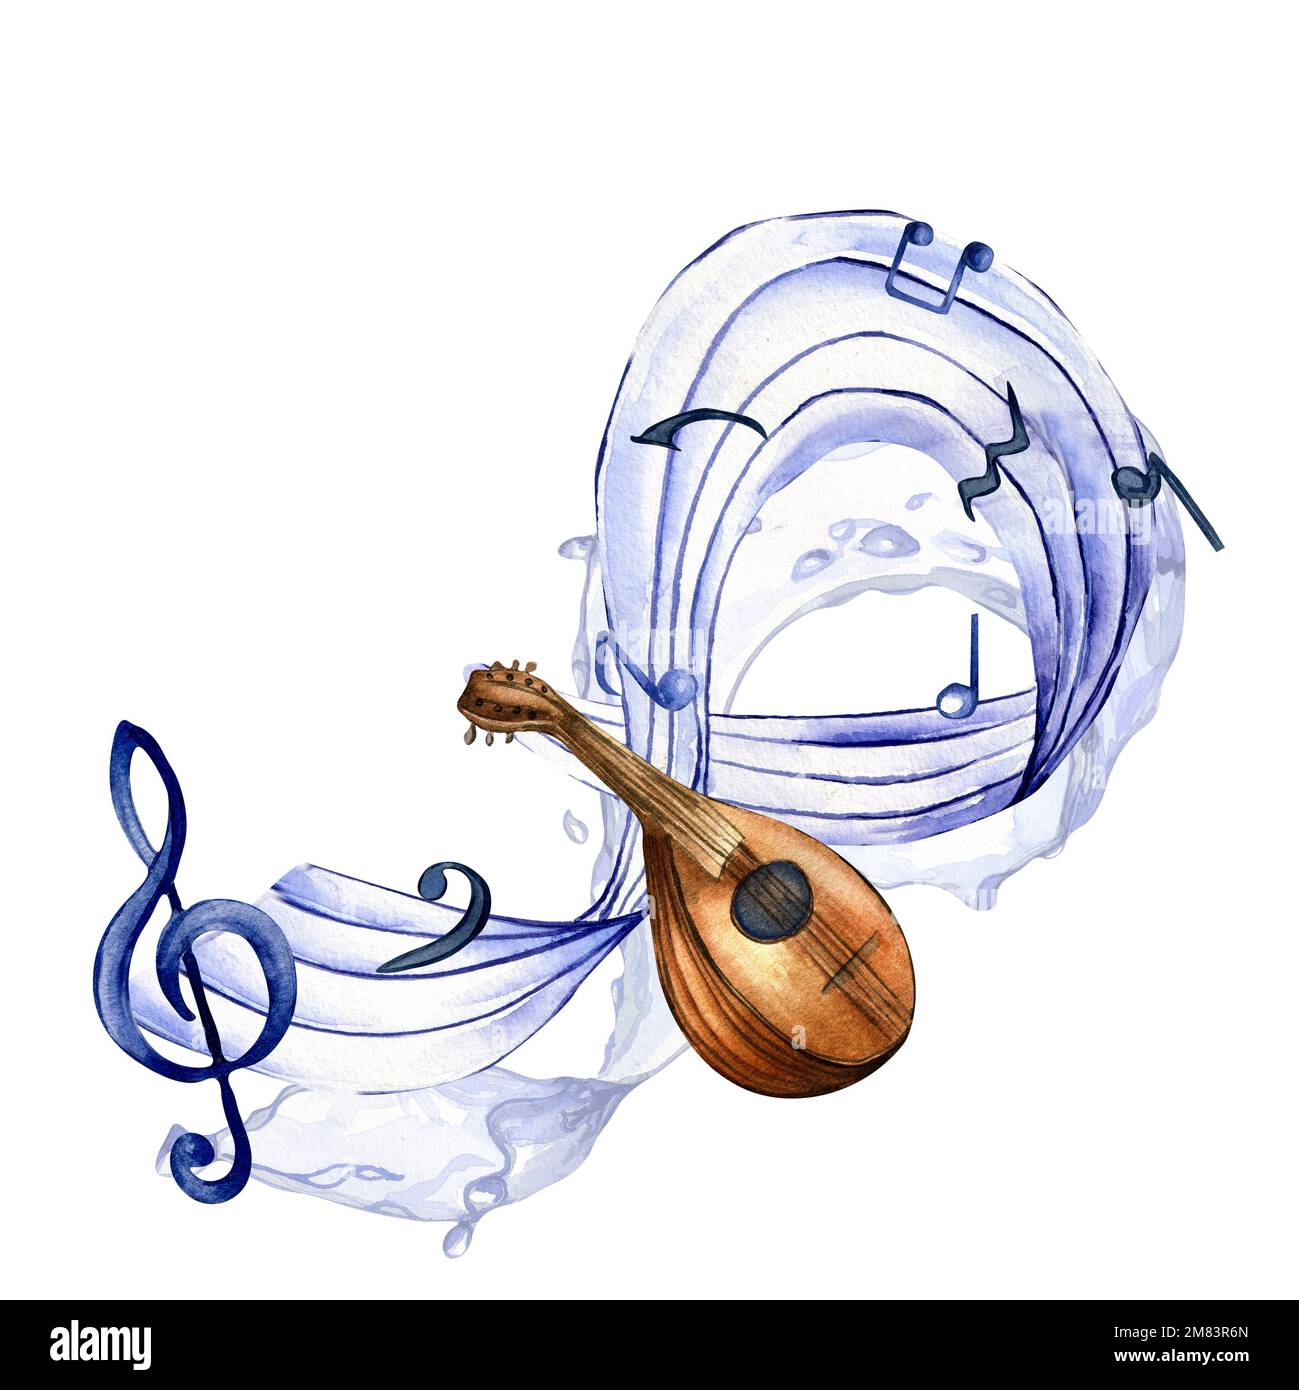 Höhenknoten, Noten und Mandolin-Aquarell-Illustration auf Weiß. Streichinstrumente, Banjo, handgezeichnet. Design für Party-Flyer, Concer Stockfoto